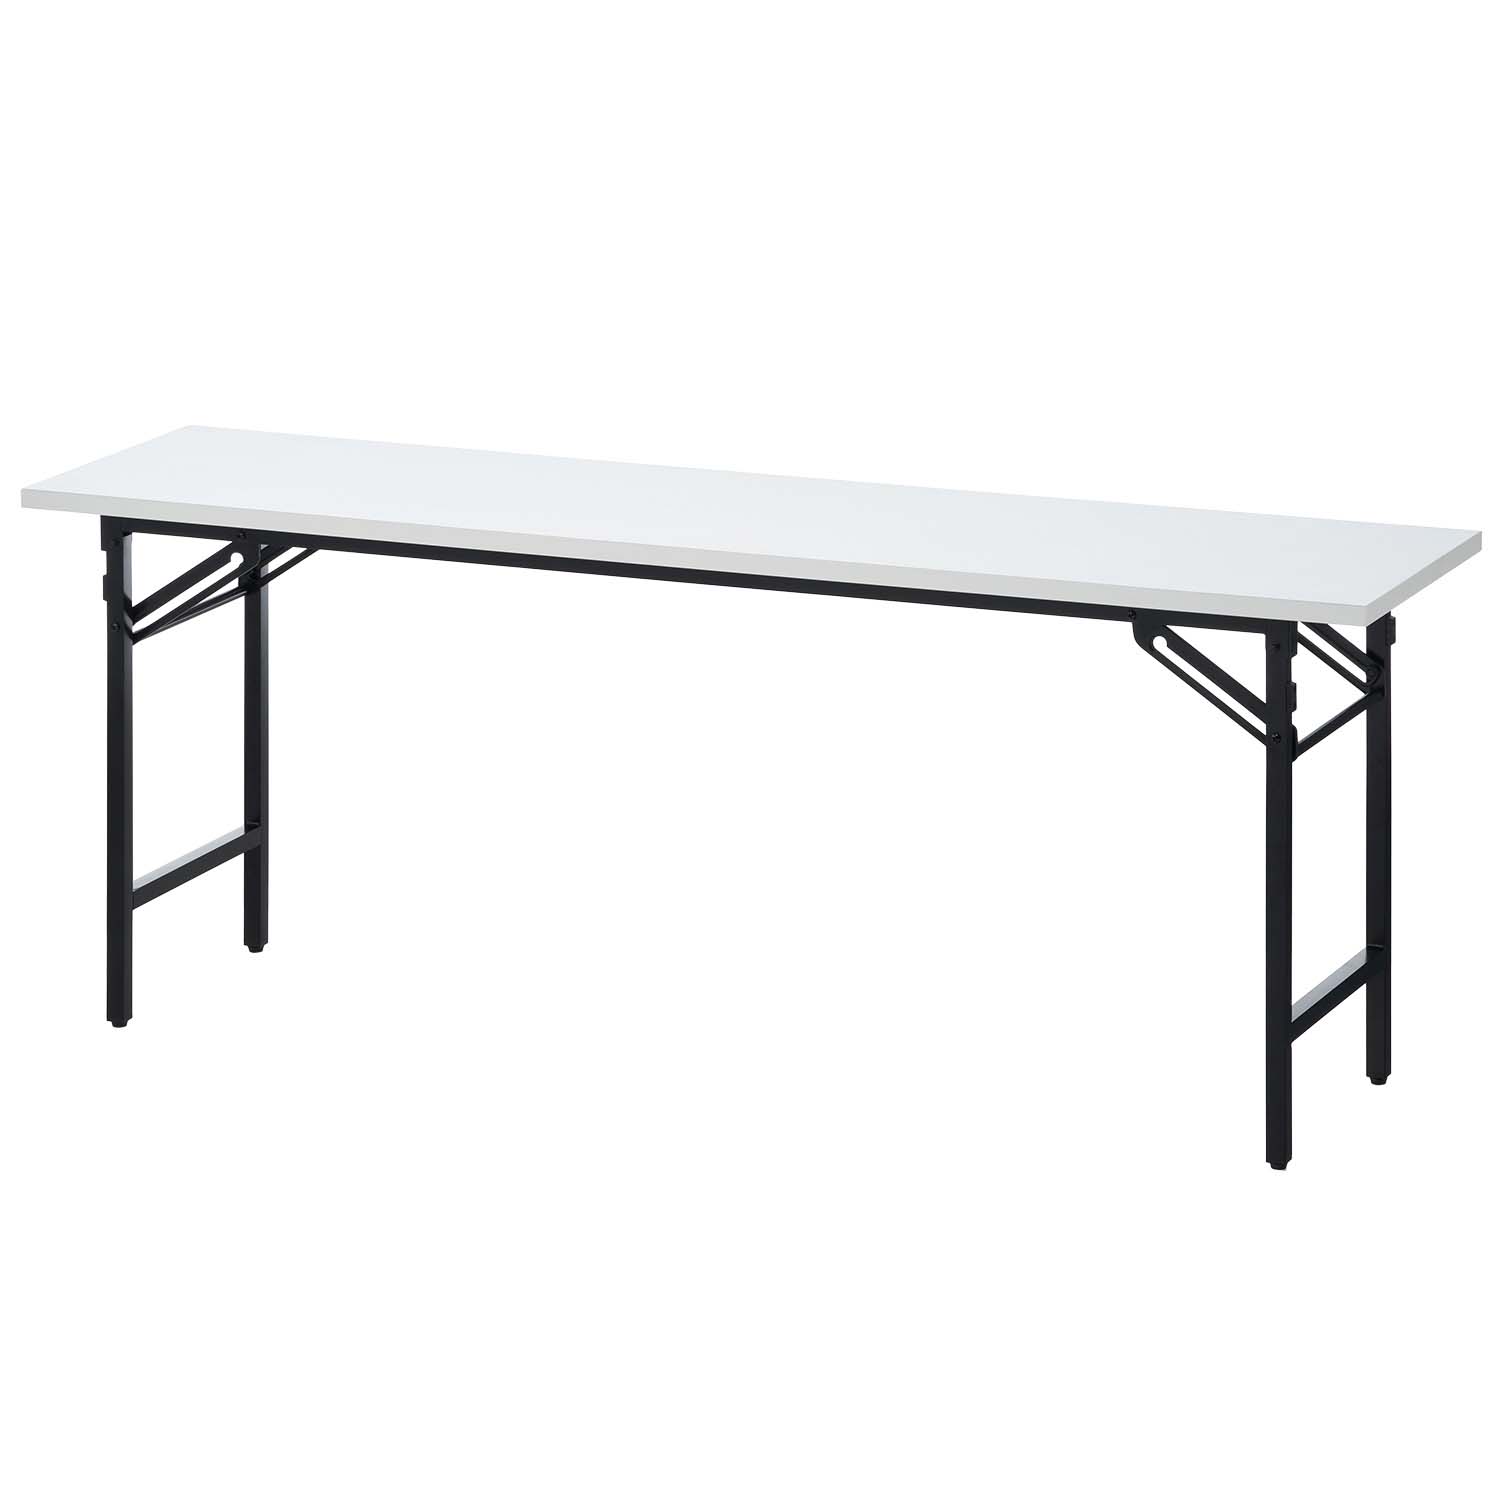 法人様限定 会議用テーブル 折りたたみテーブル 棚無し 幅1800×奥行450 